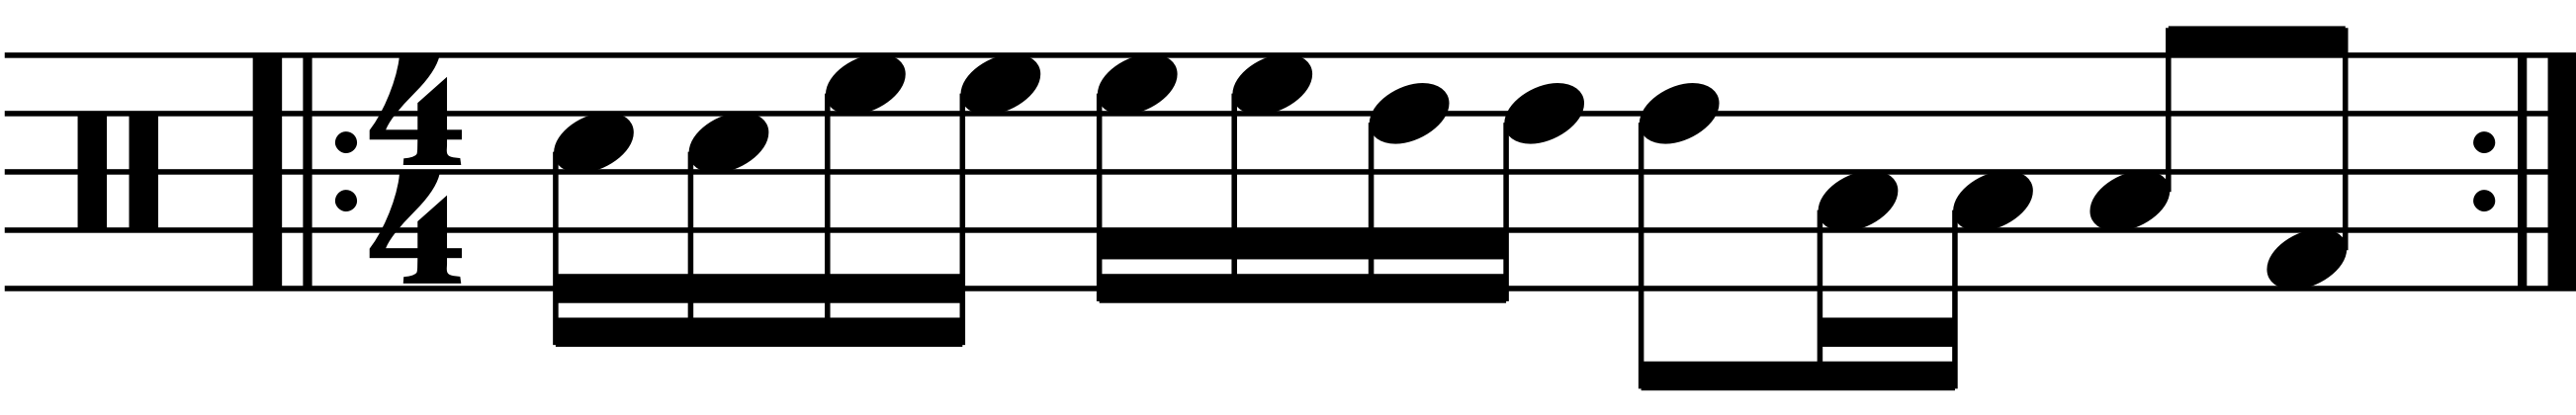 A fill constuction idea using the base rhythm